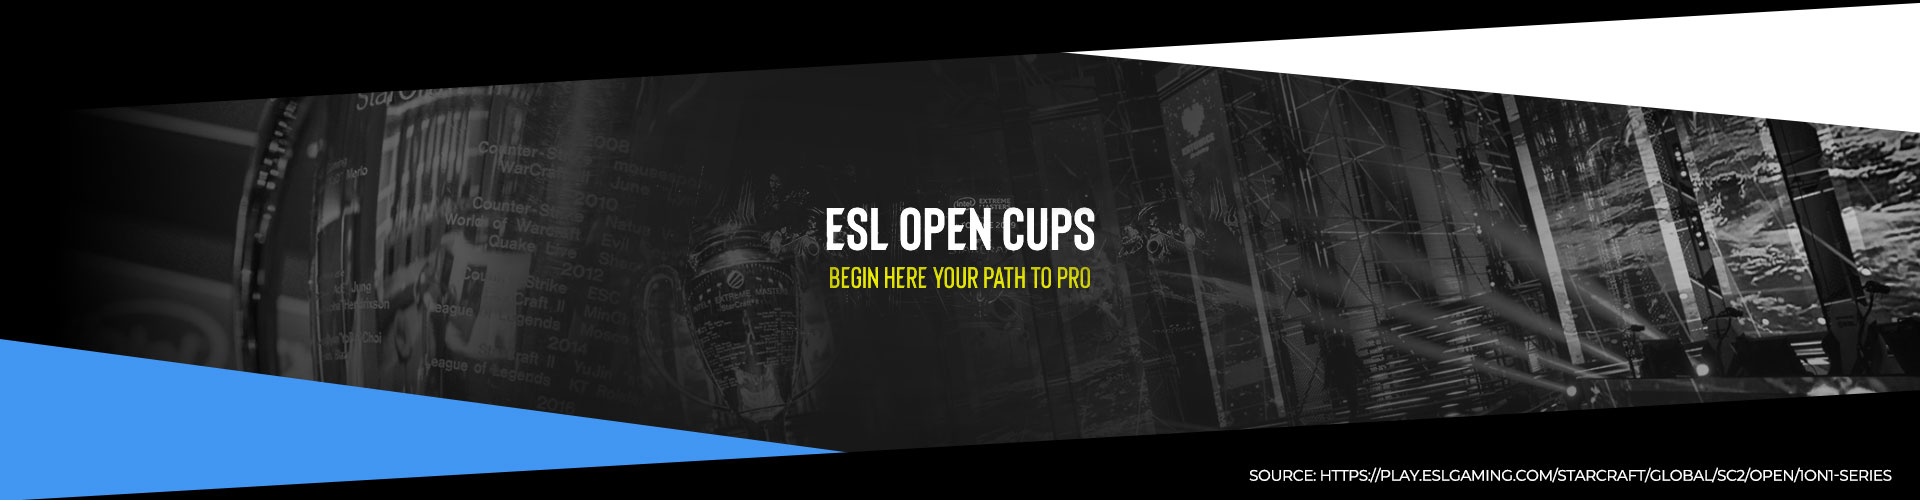 ESL Open Cup Weekly Updates